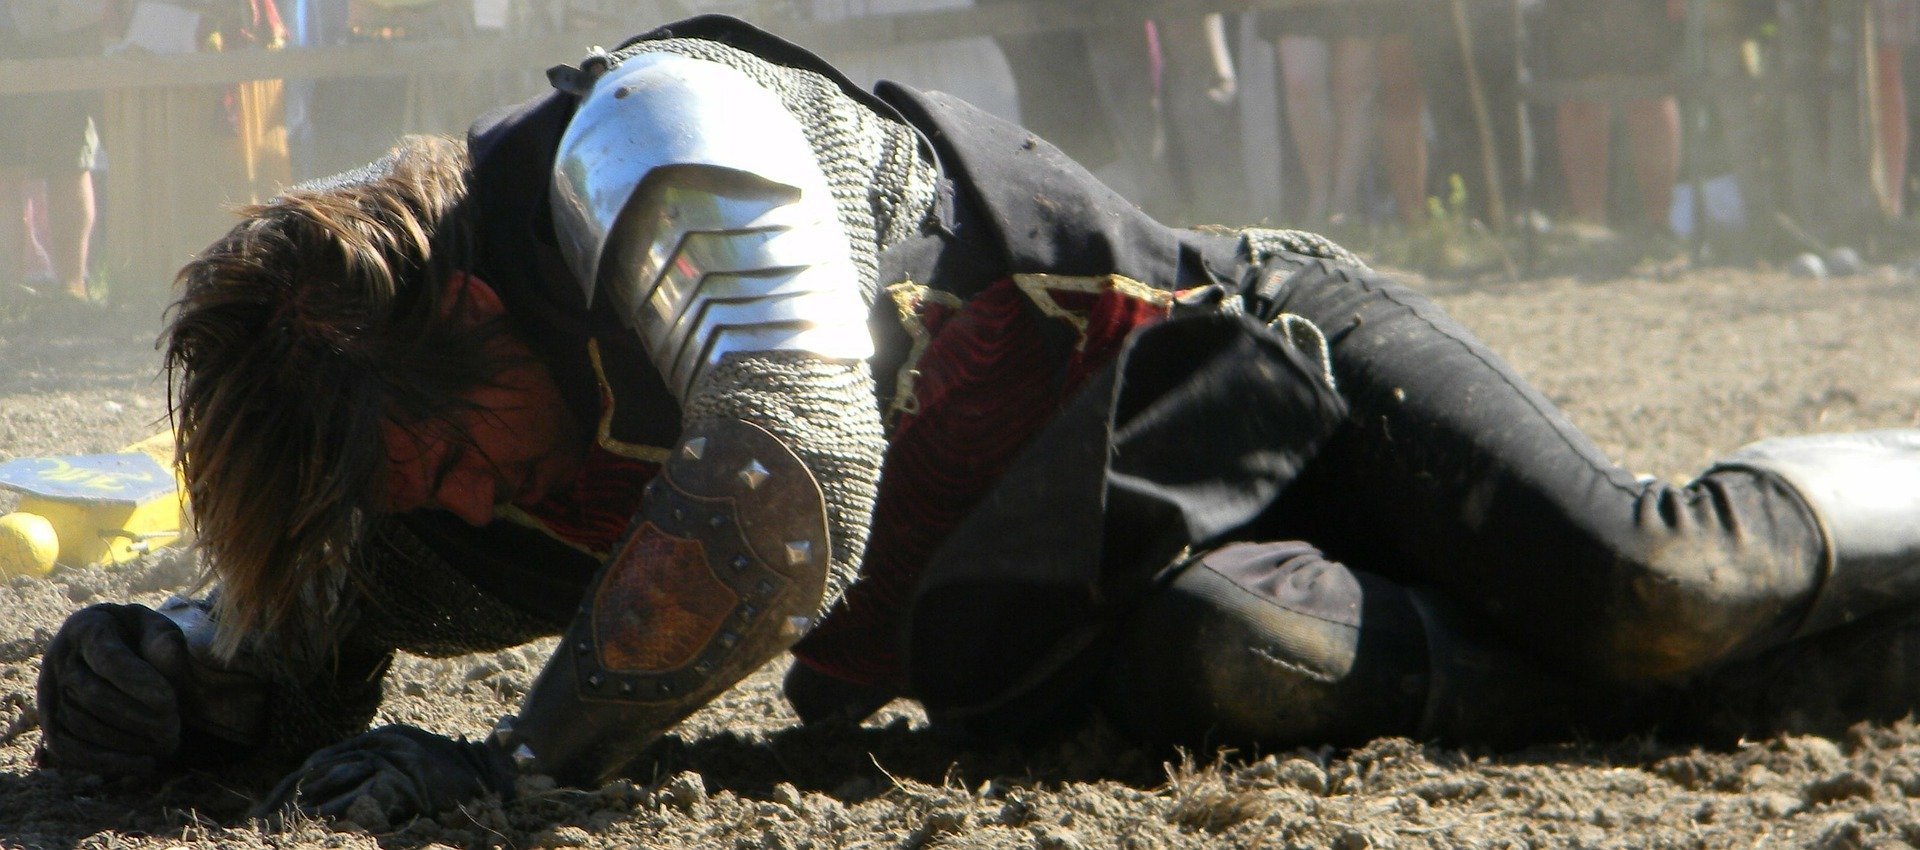 Homem usando roupas medievais, caído no chão, se levantando